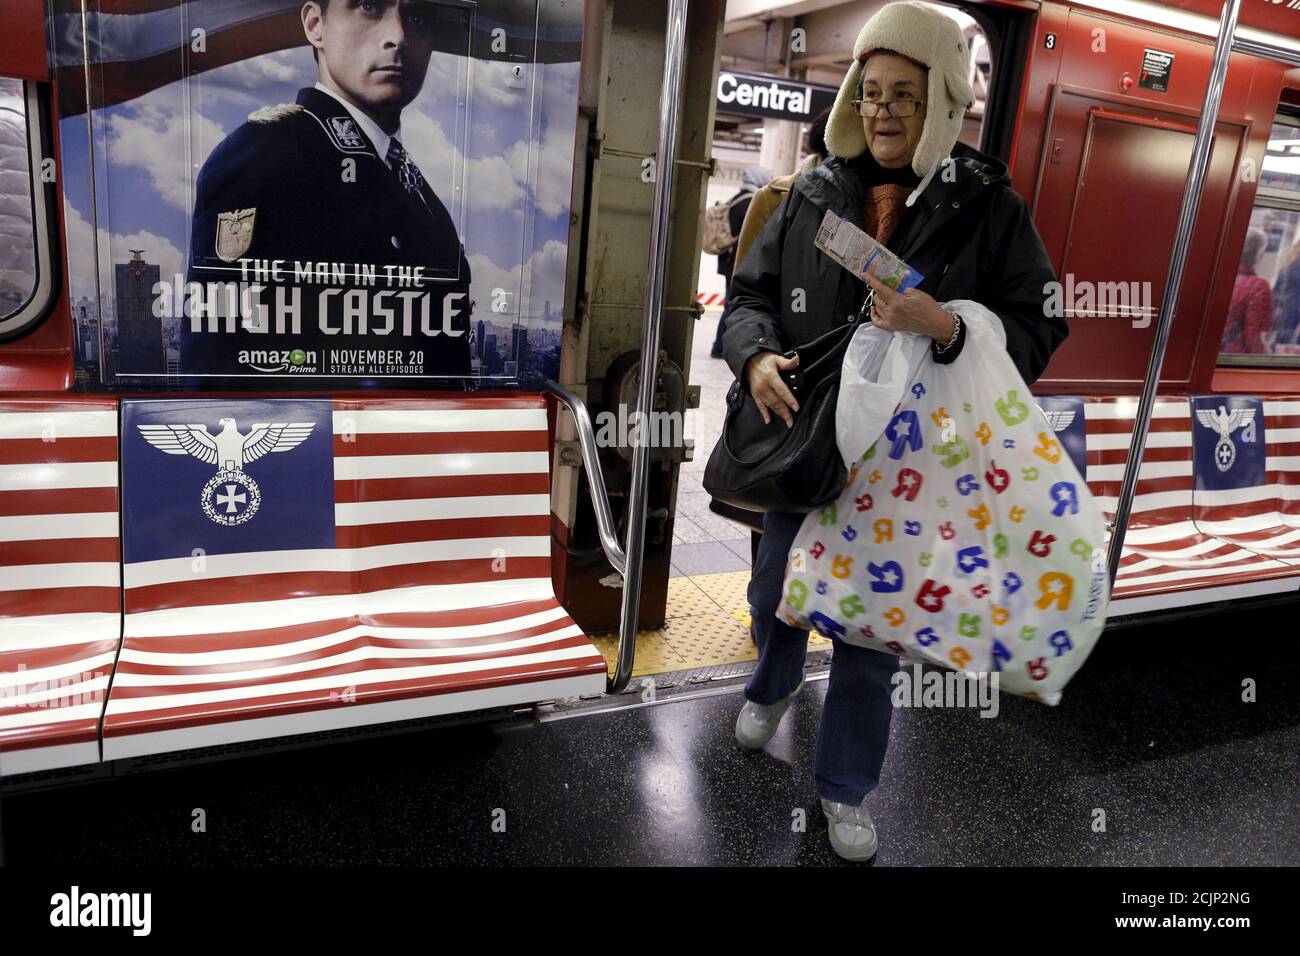 Passagiere steigen in einen U-Bahn-Zug des 42nd Street Shuttle ein, der mit  Werbung für die Amazon-Serie "The man in the High Castle" im Stadtteil  Manhattan von New York, 24. November 2015, verpackt